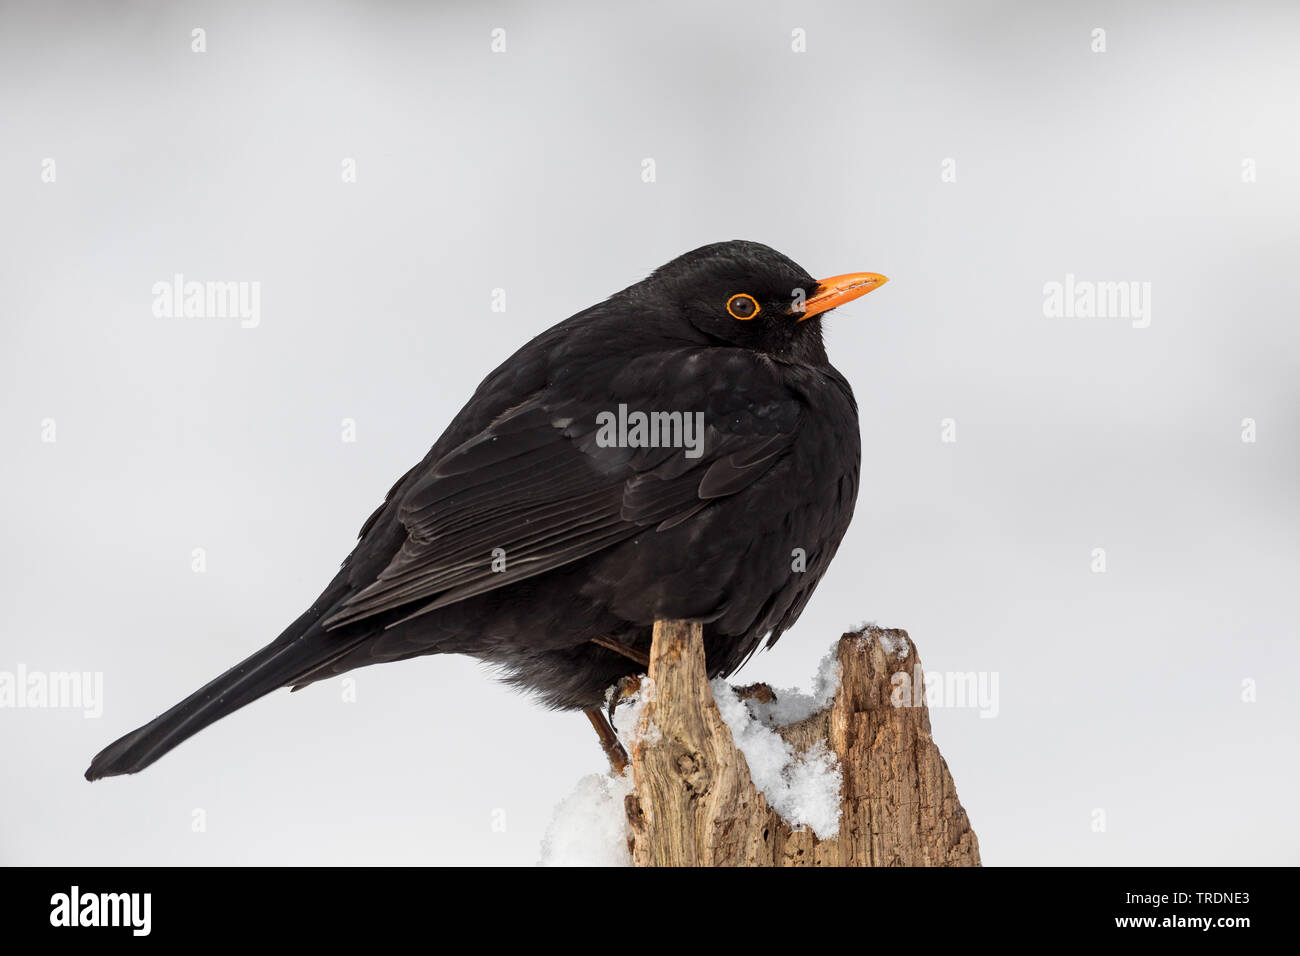 blackbird (Turdus merula), male in winter on a tree stump, Germany Stock Photo